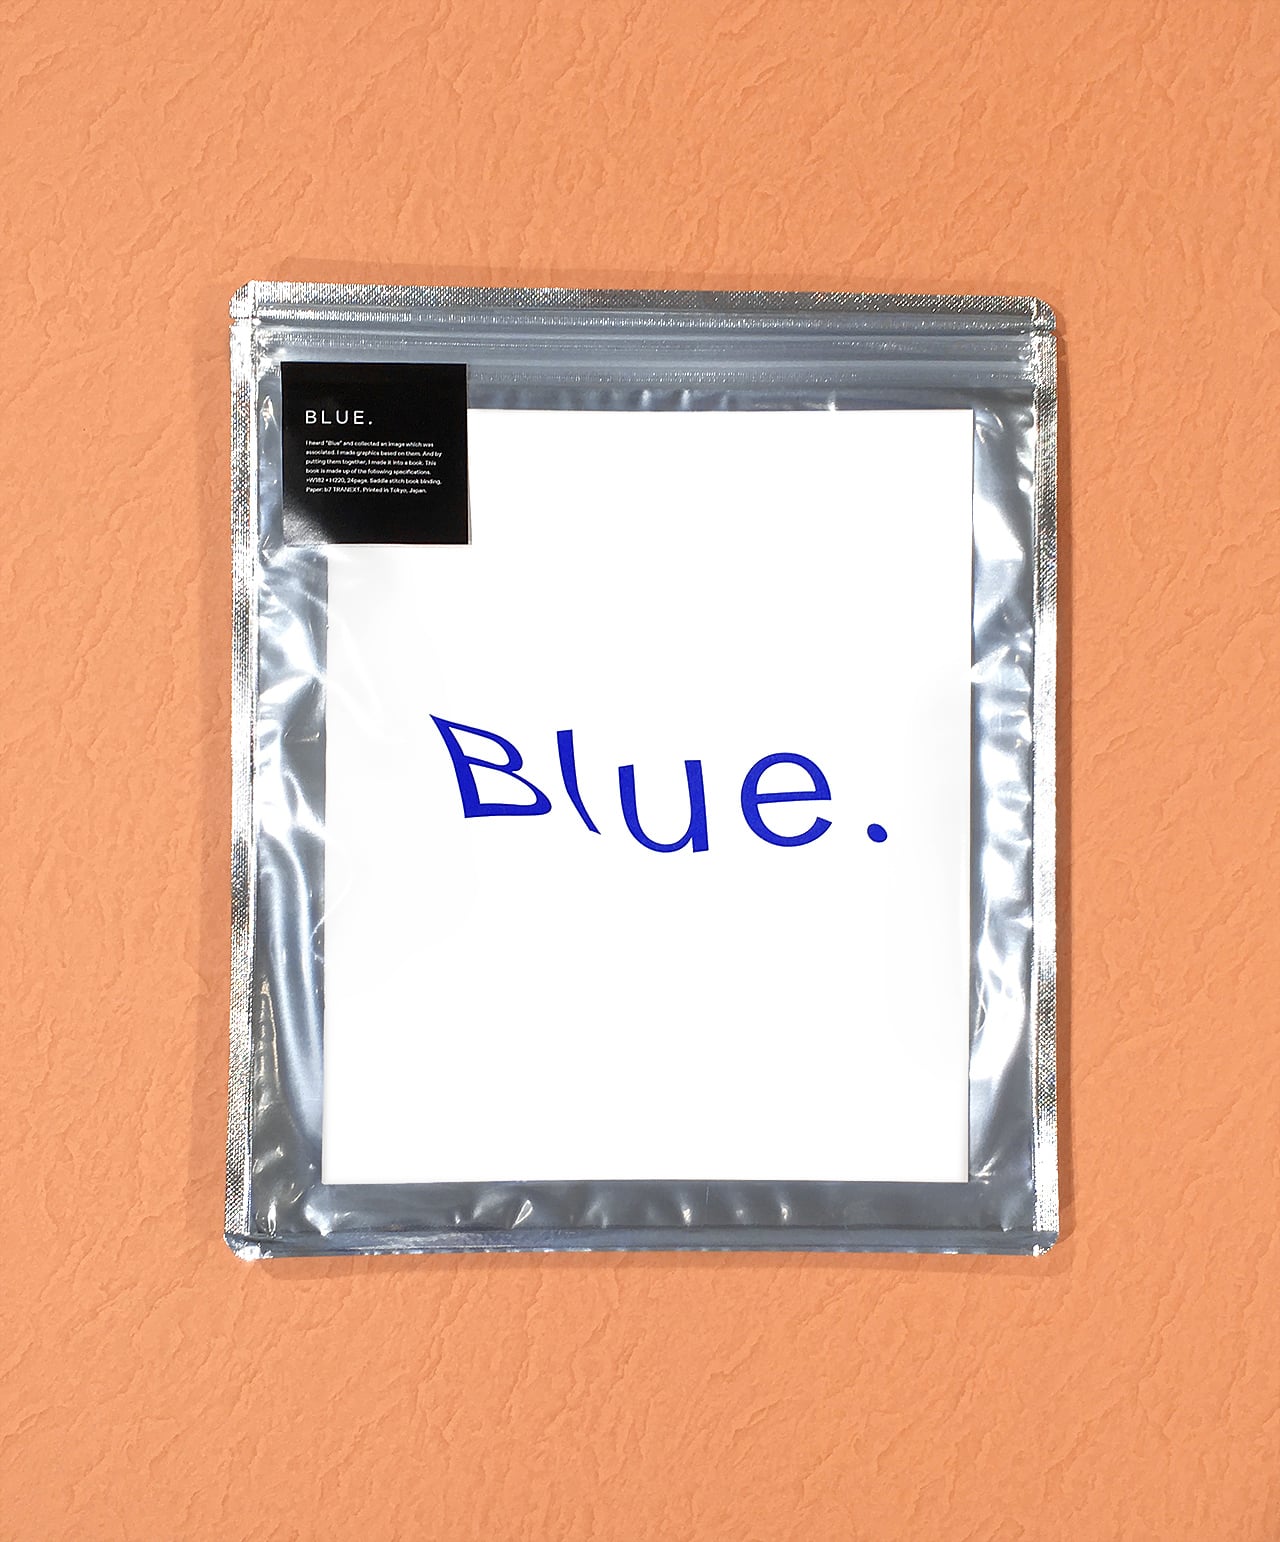 BLUE. 1